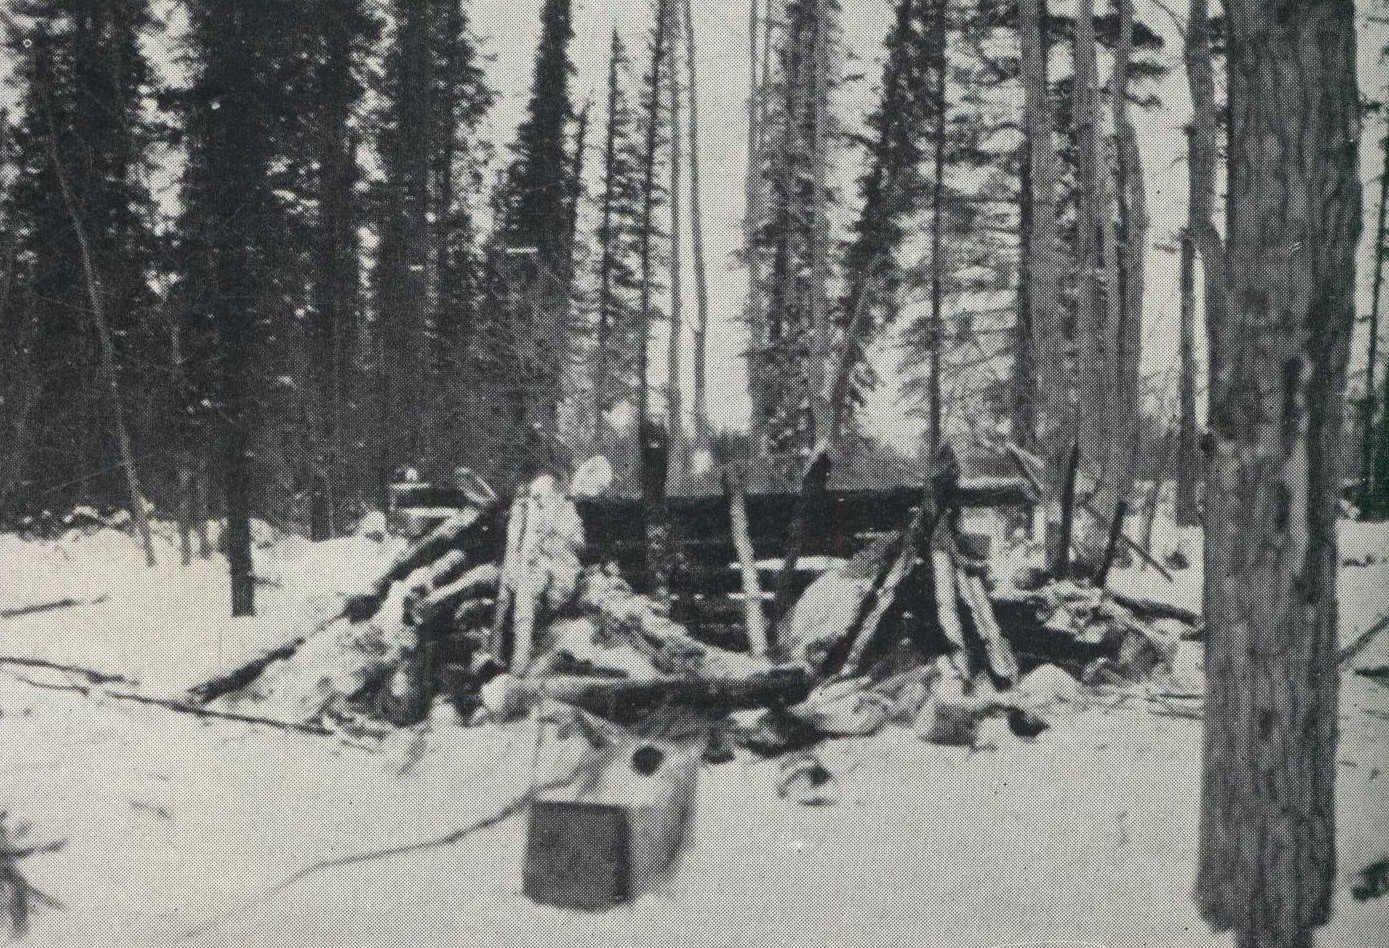 Destroyed hut in forest wilderness